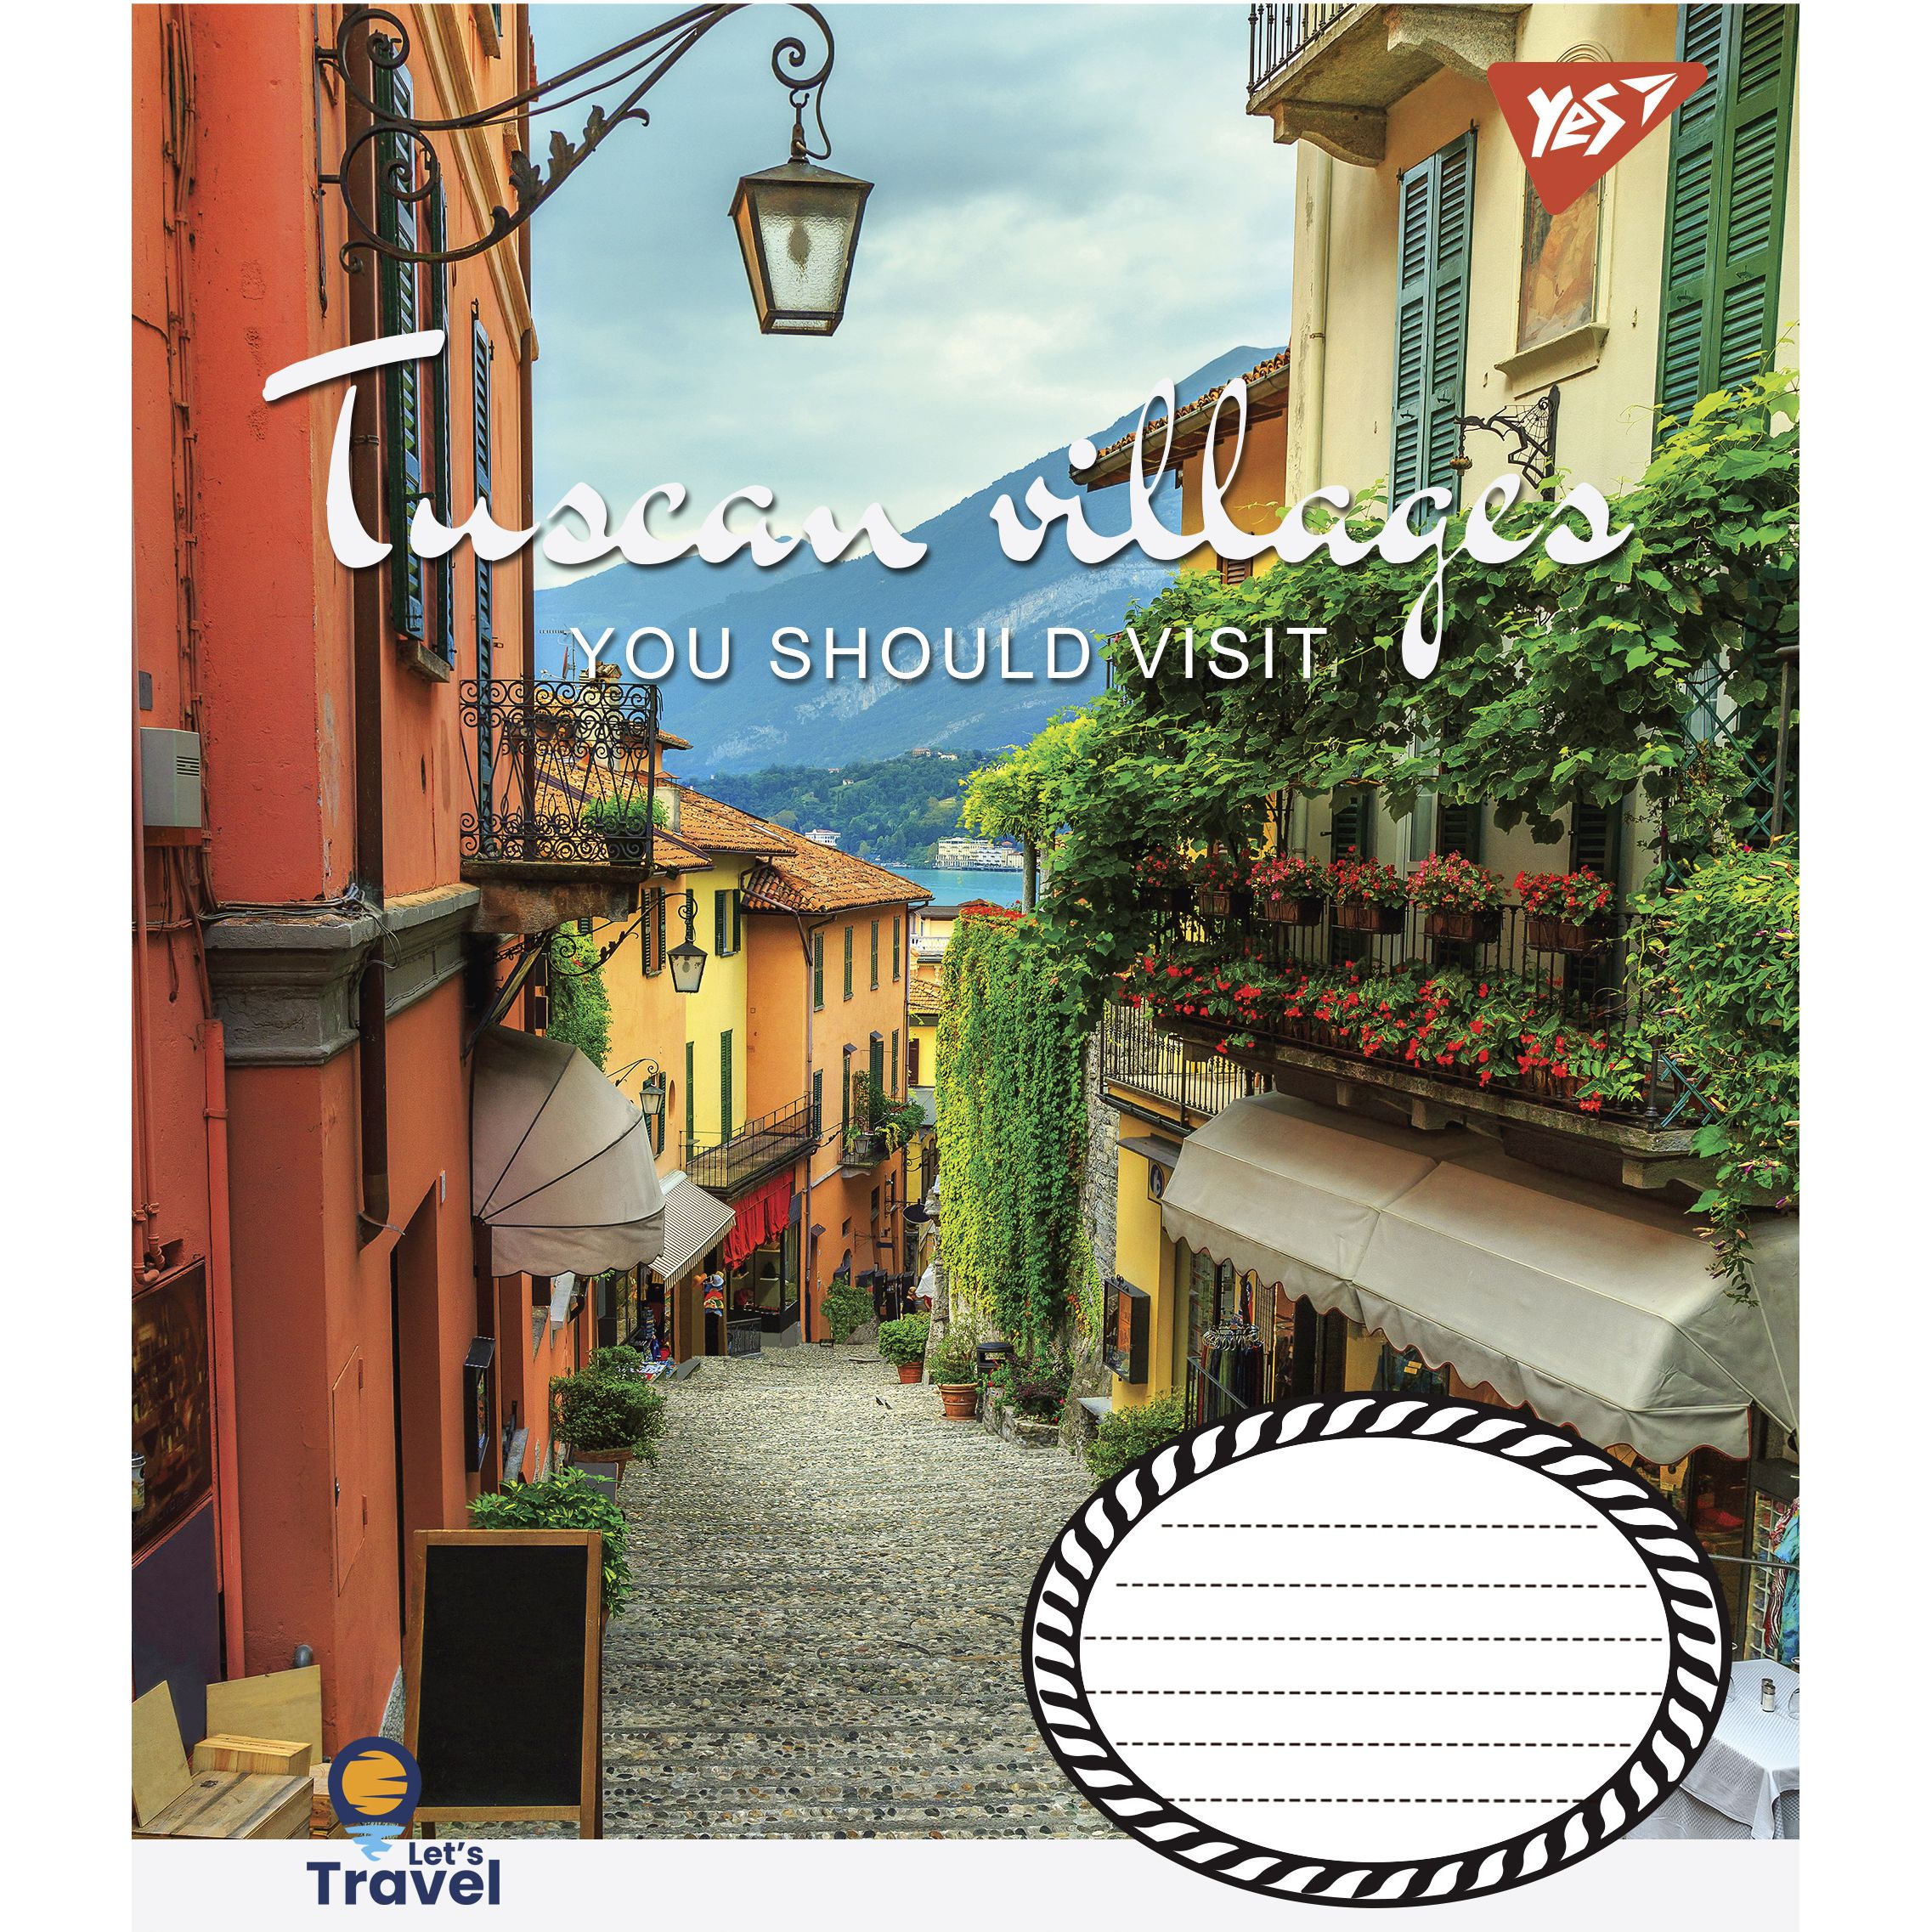 Тетрадь общая Yes Tuscan Villages, A5, в клеточку, 48 листов - фото 5